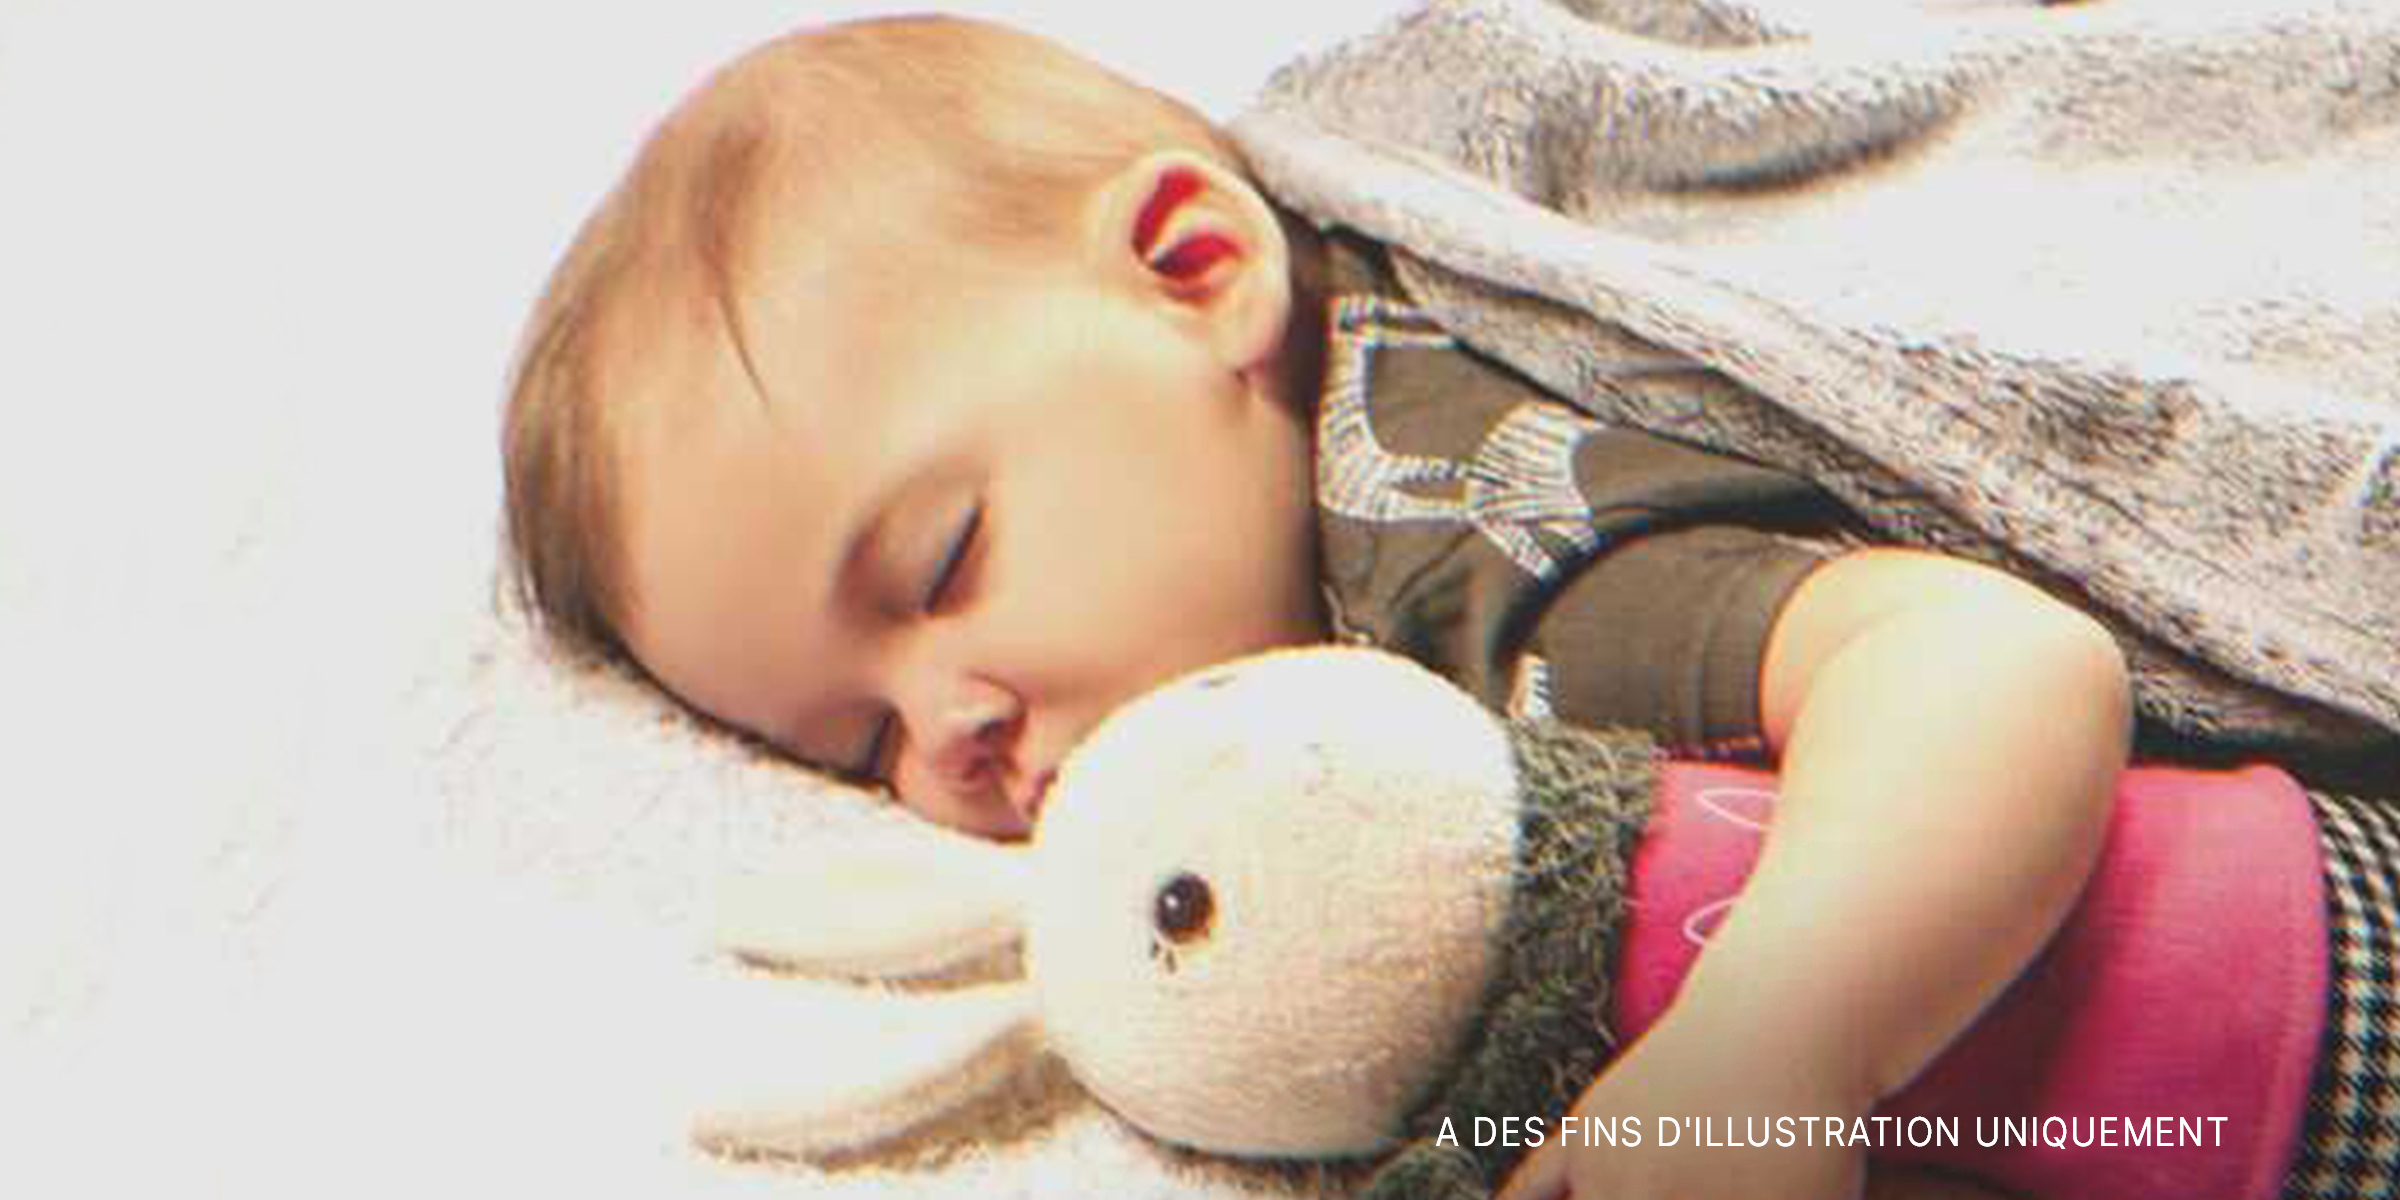 Un bébé dormant avec son doudou | Source : Flickr/Marco Verch